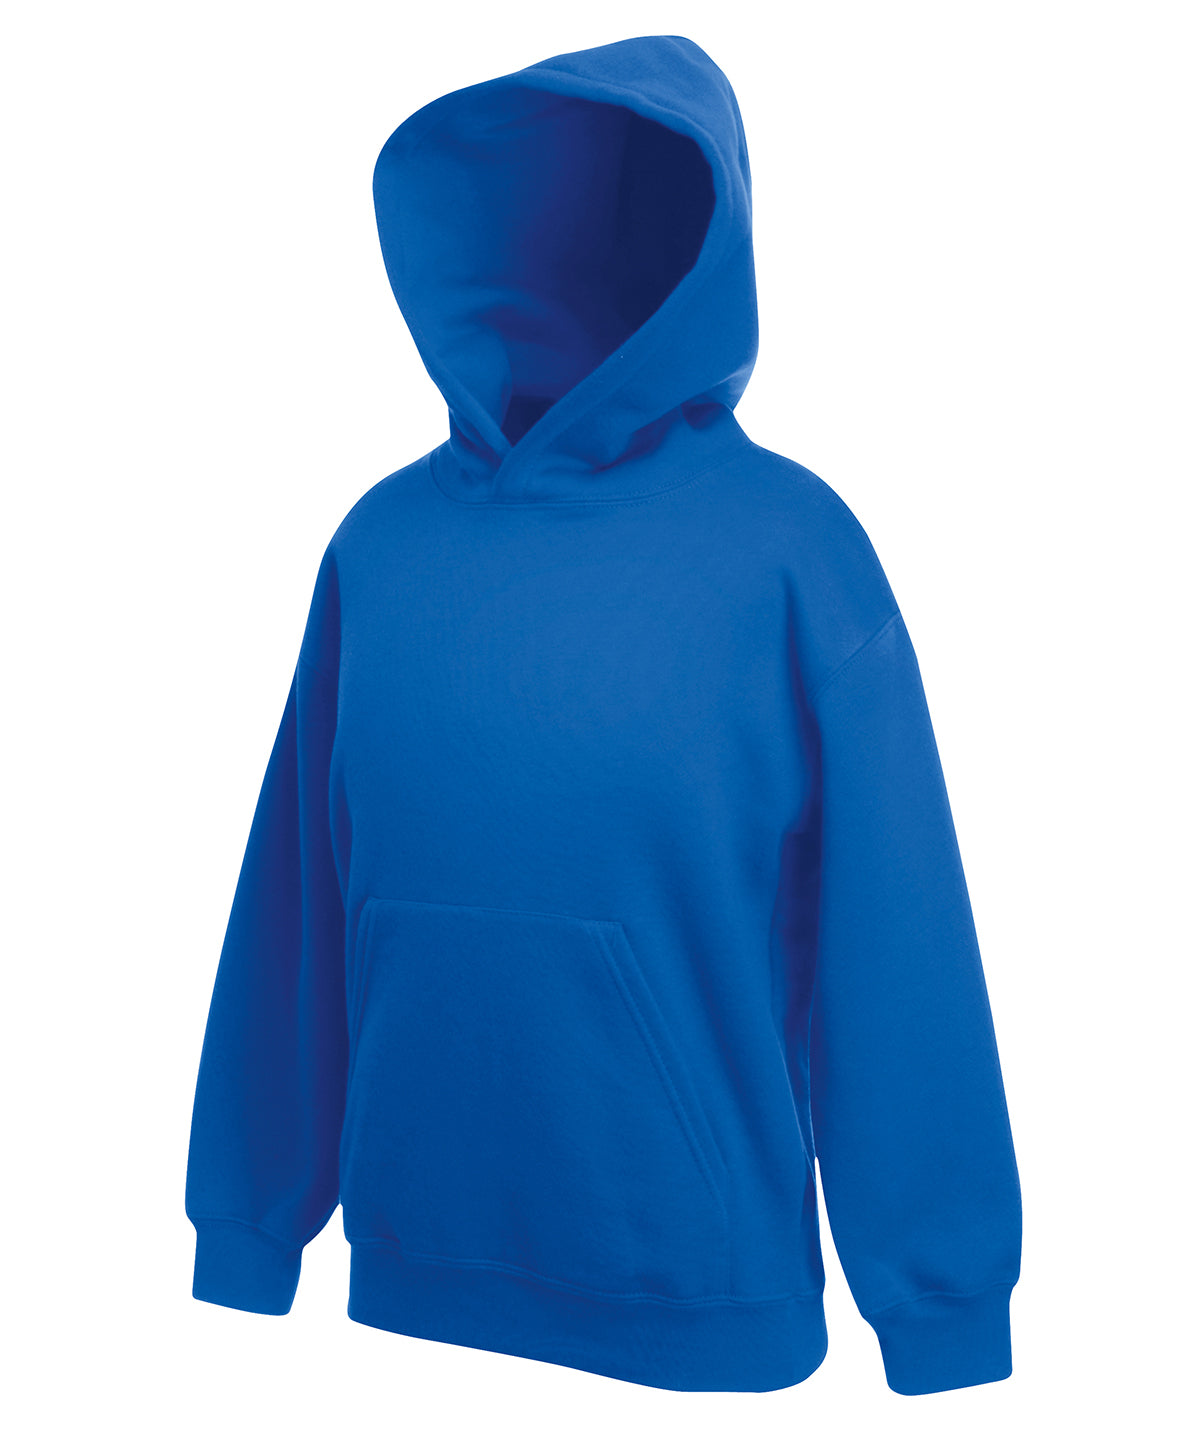 Personalised Hoodies - Navy Fruit of the Loom Kids premium hooded sweatshirt